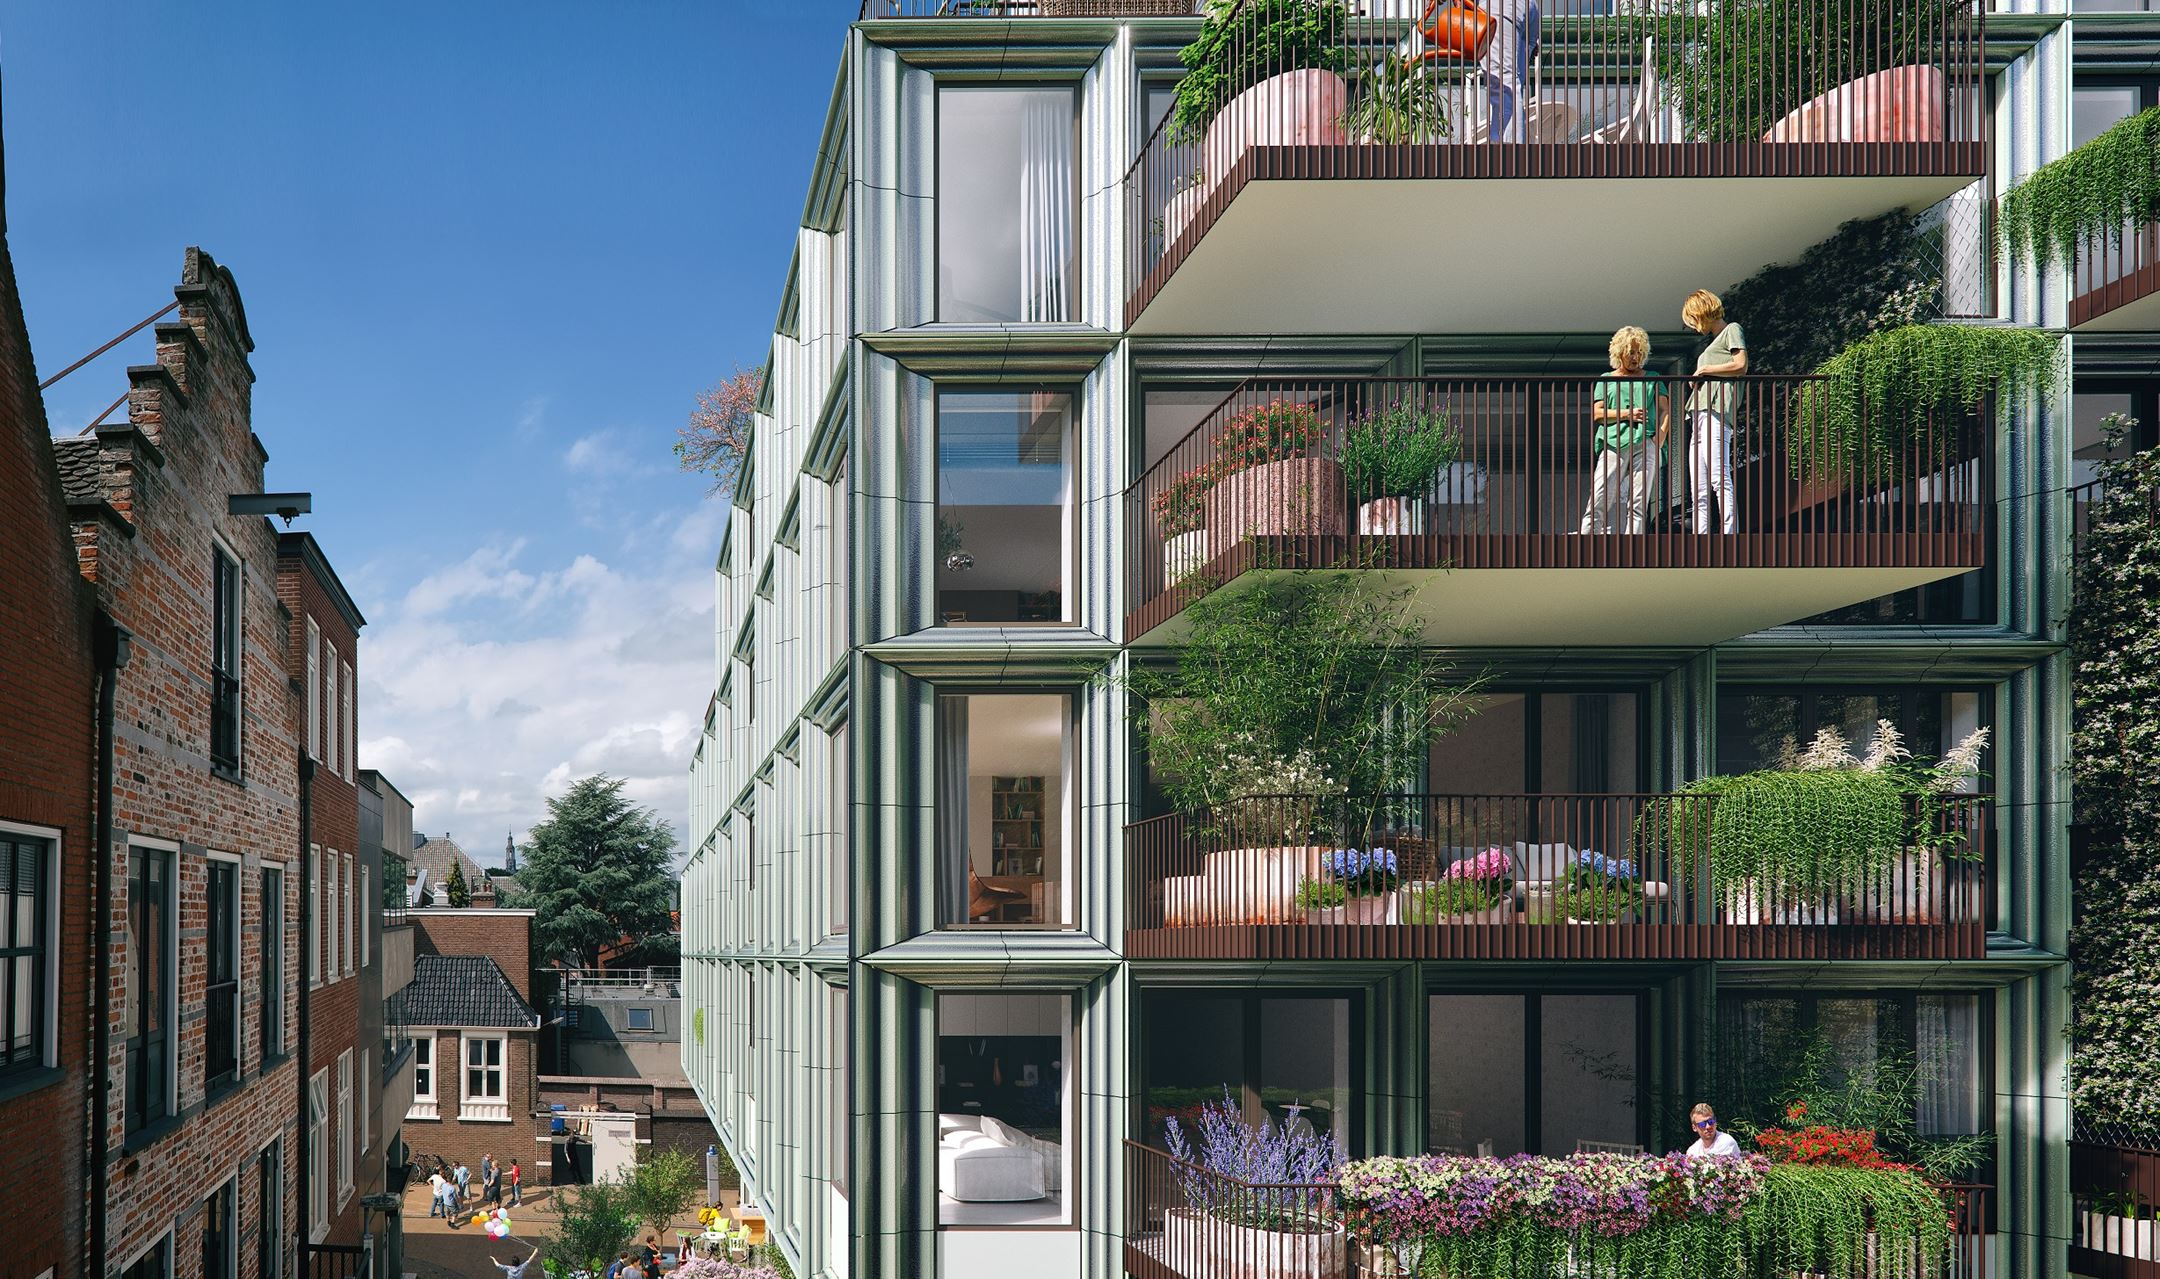 Mercado Groningen gevel aanzicht met groene balkons in hartje Groningen aan de Rode Weeshuisstraat